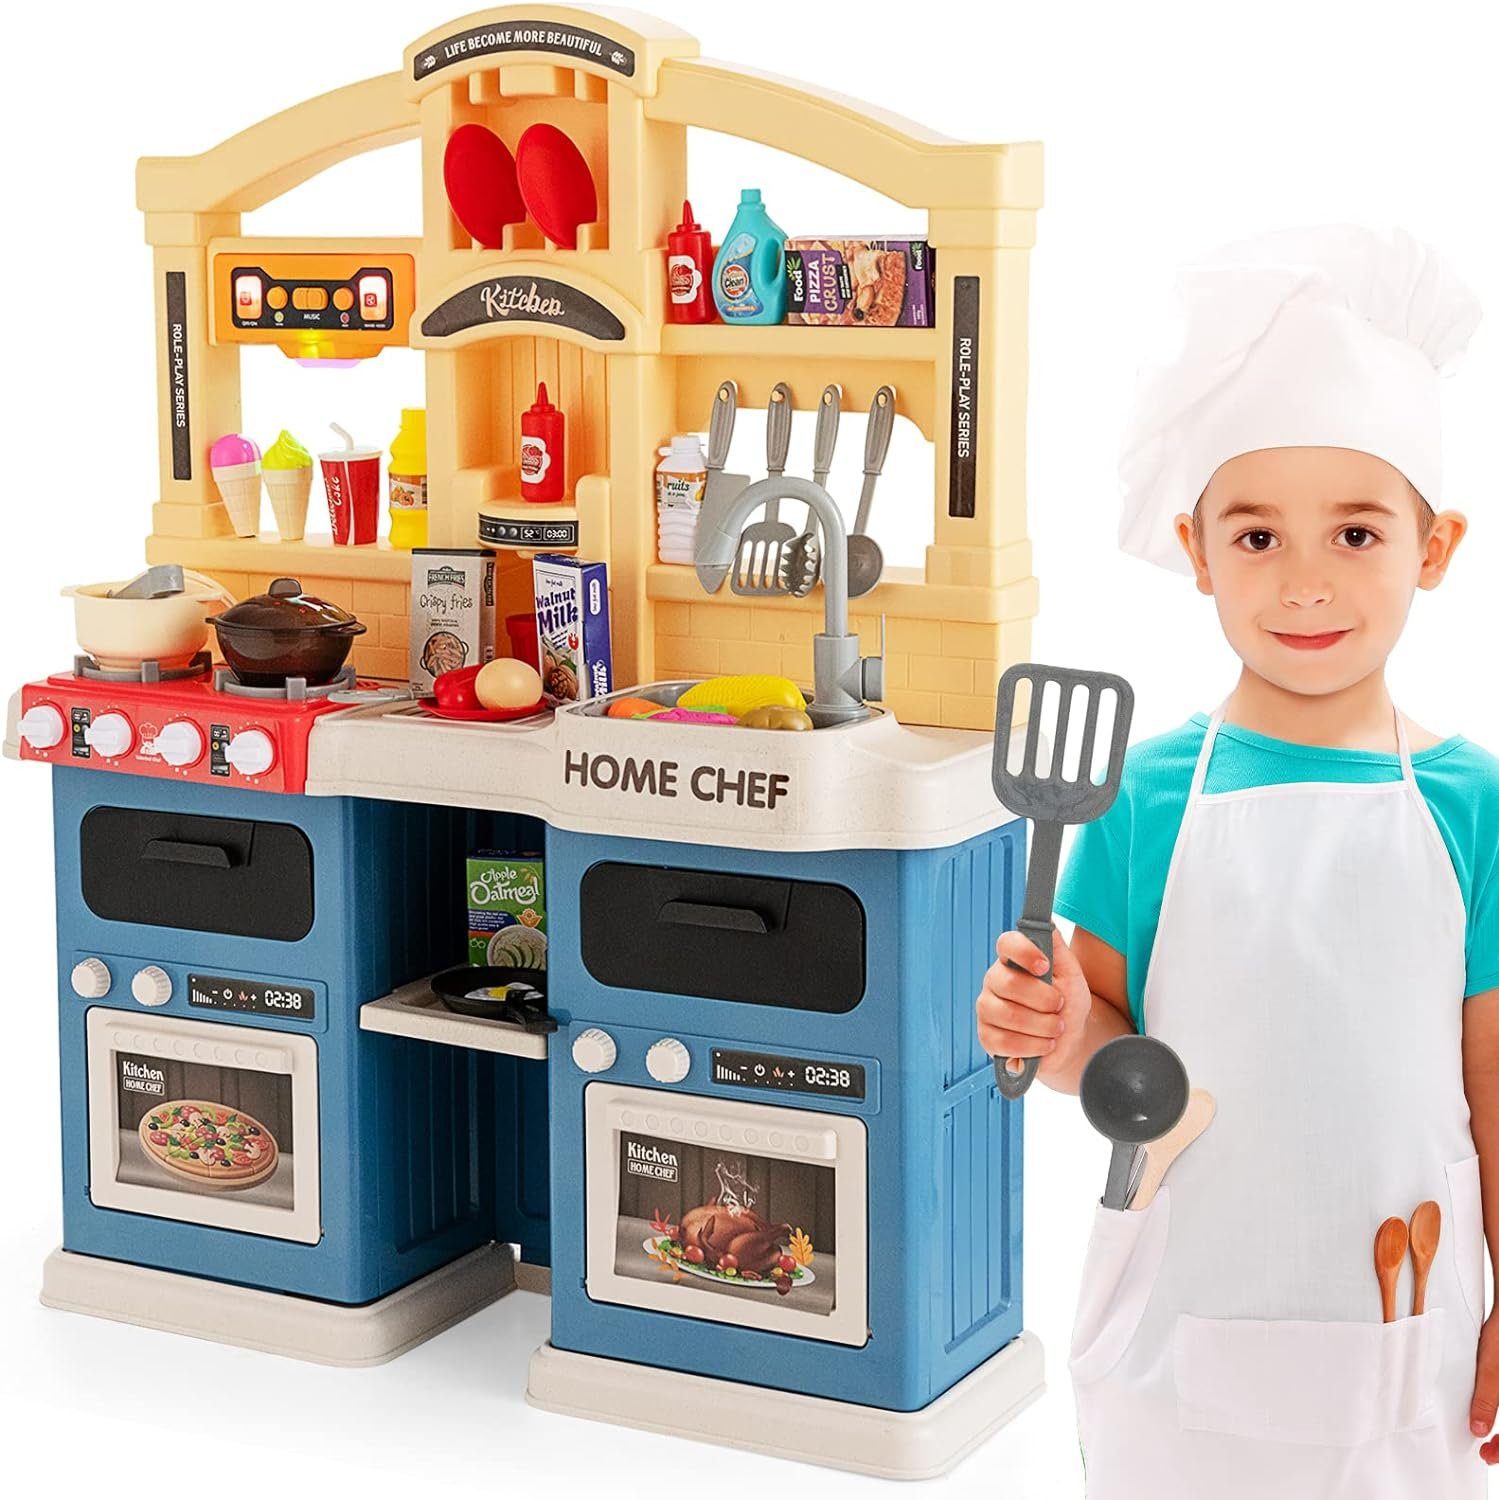 KOMFOTTEU Spielküche Kinderküche, mit Herd Öfen für Kinder ab 3 Jahren